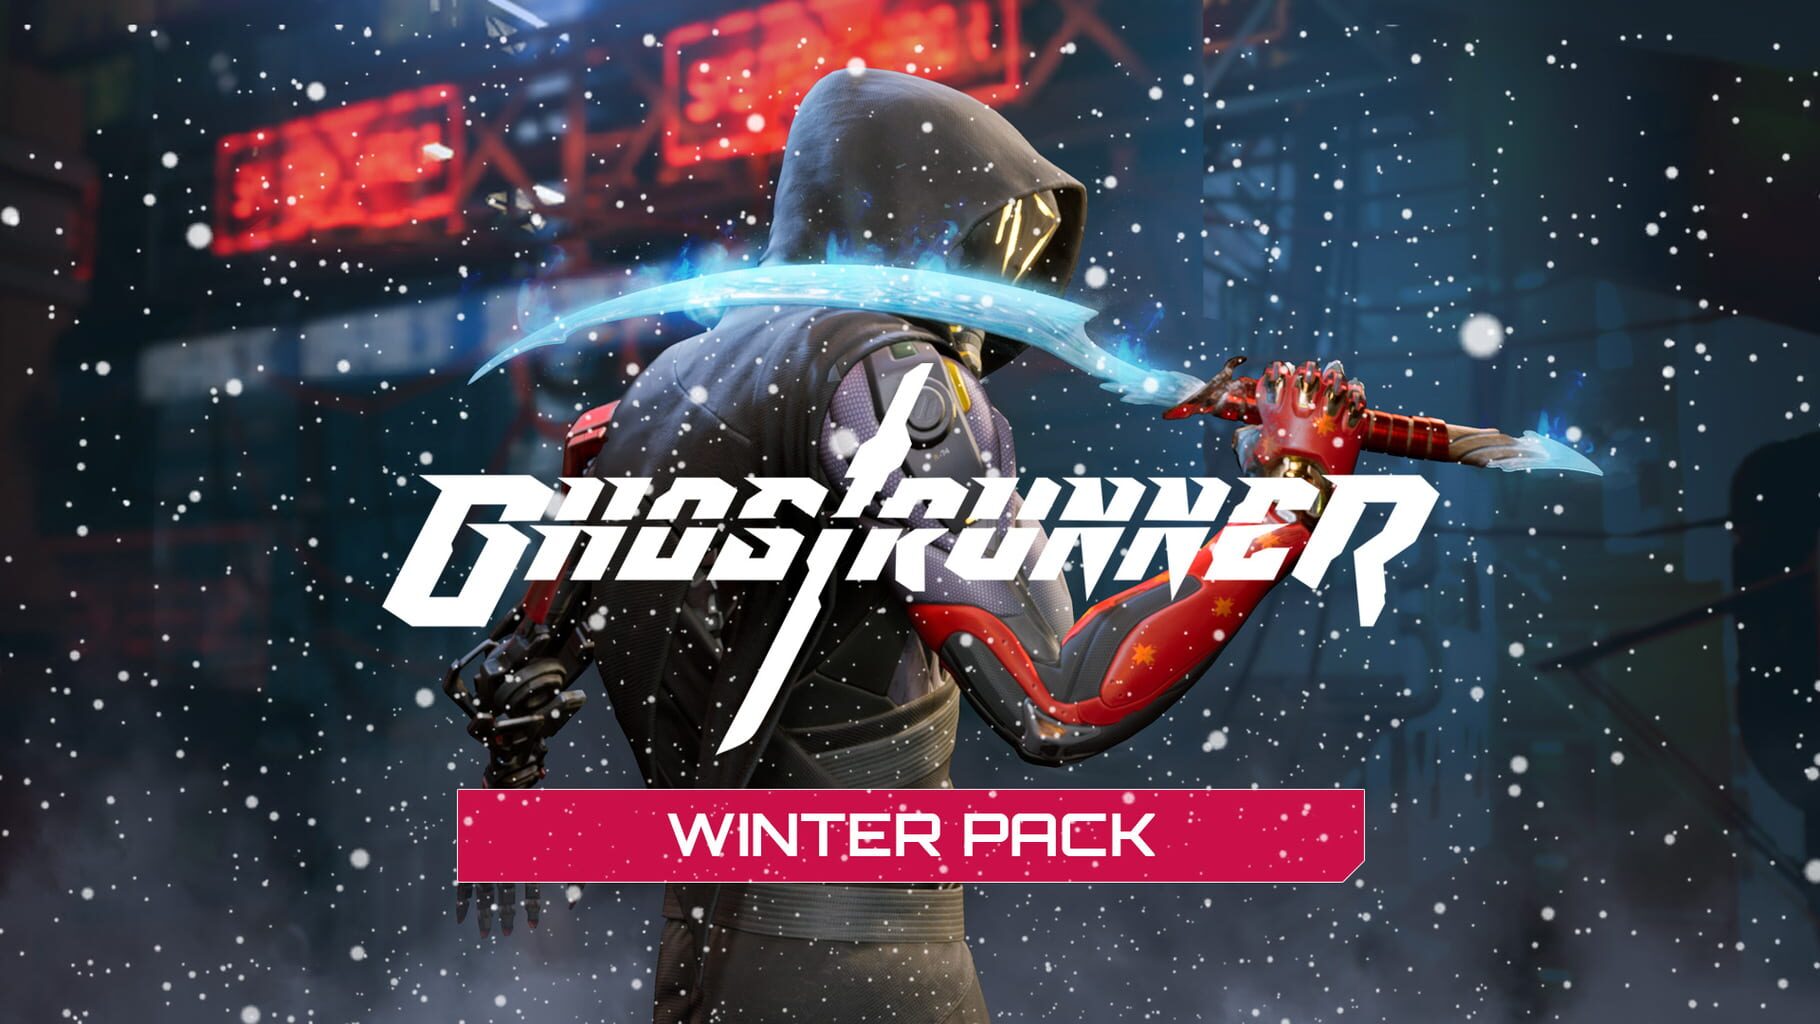 Ghostrunner: Winter Pack artwork